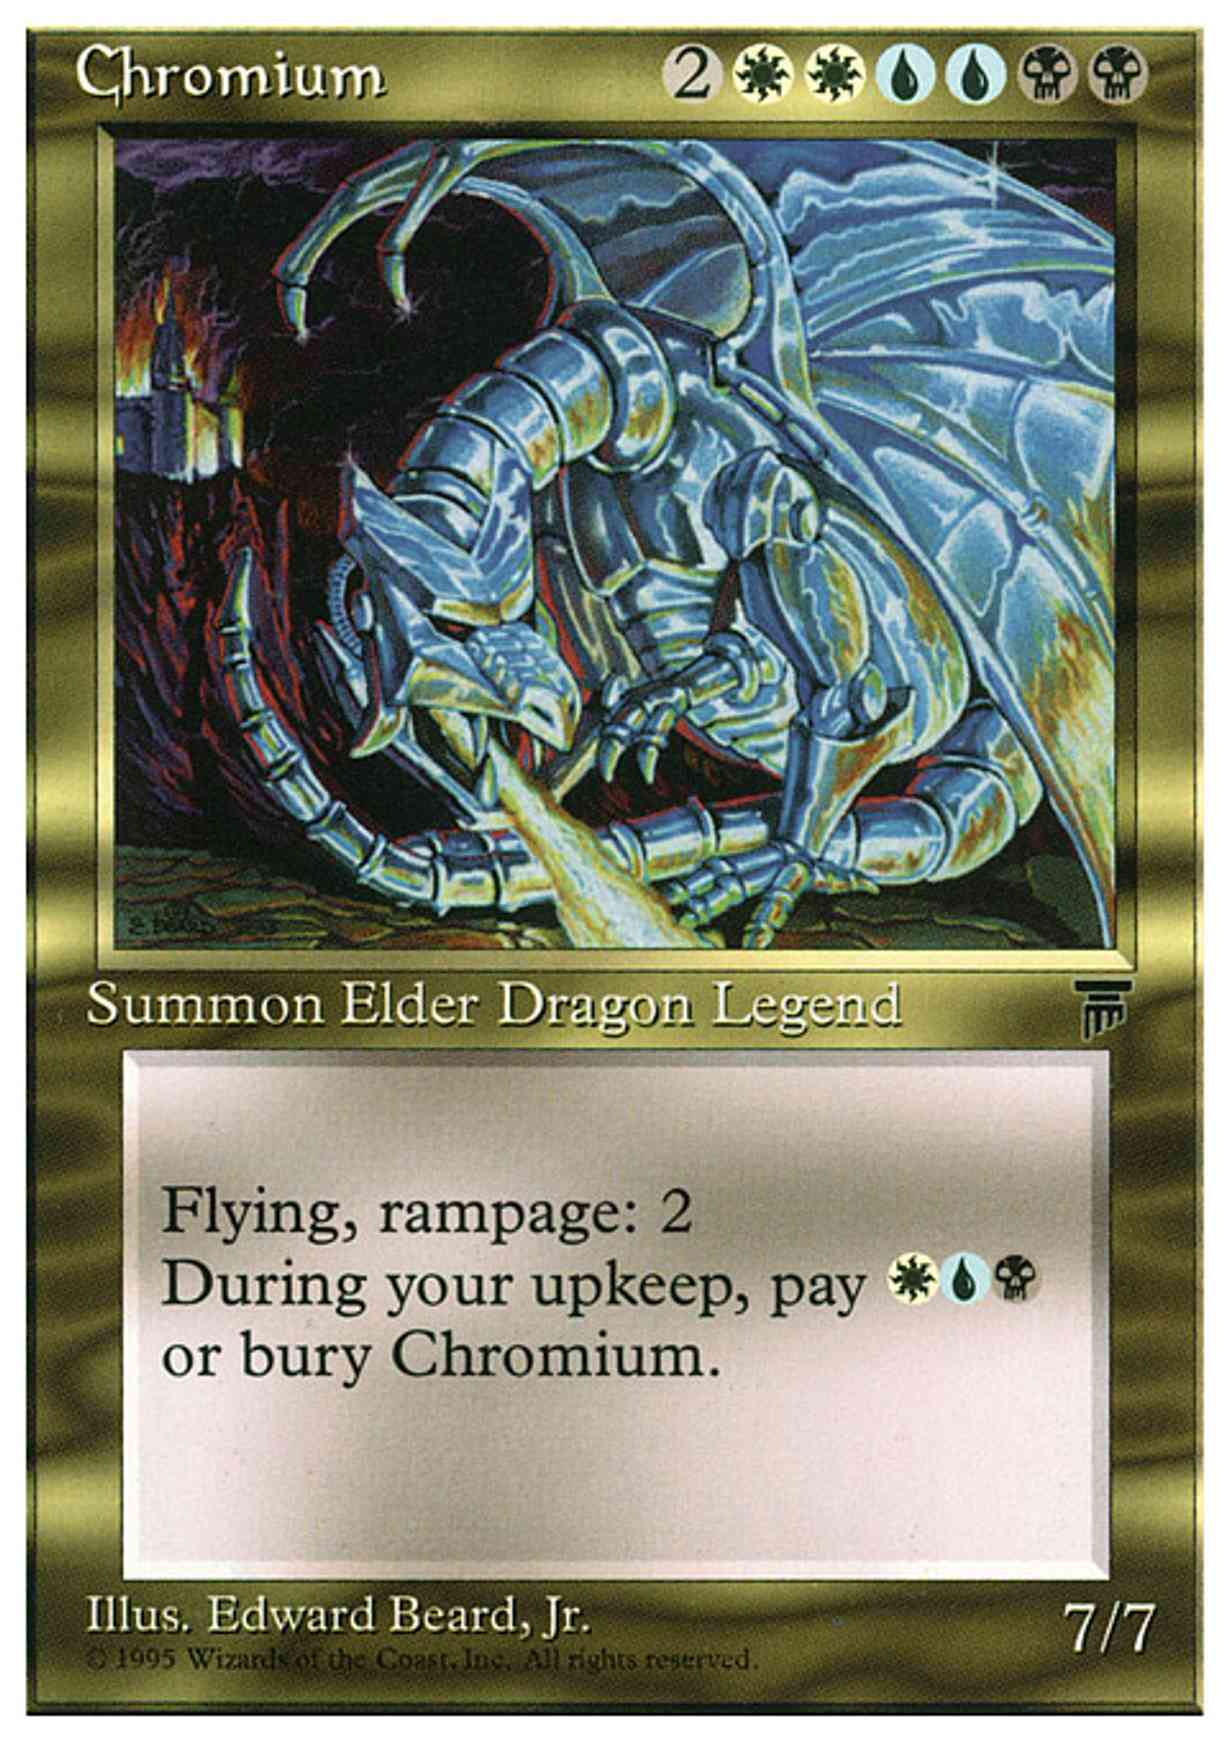 Chromium magic card front